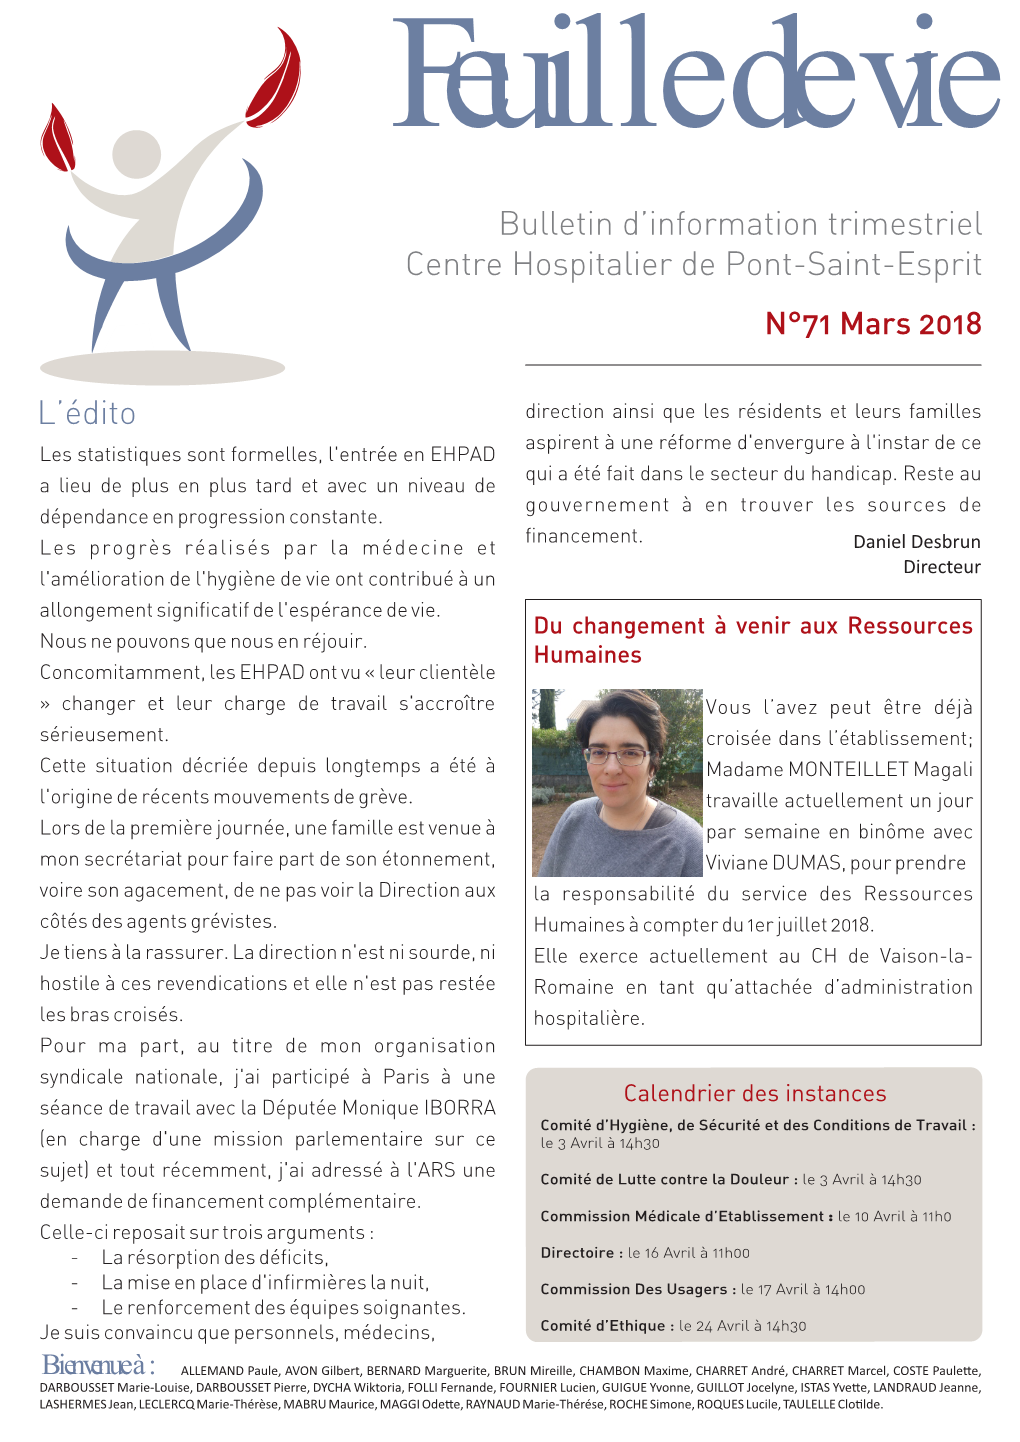 Bulletin D'information Trimestriel Centre Hospitalier De Pont-Saint